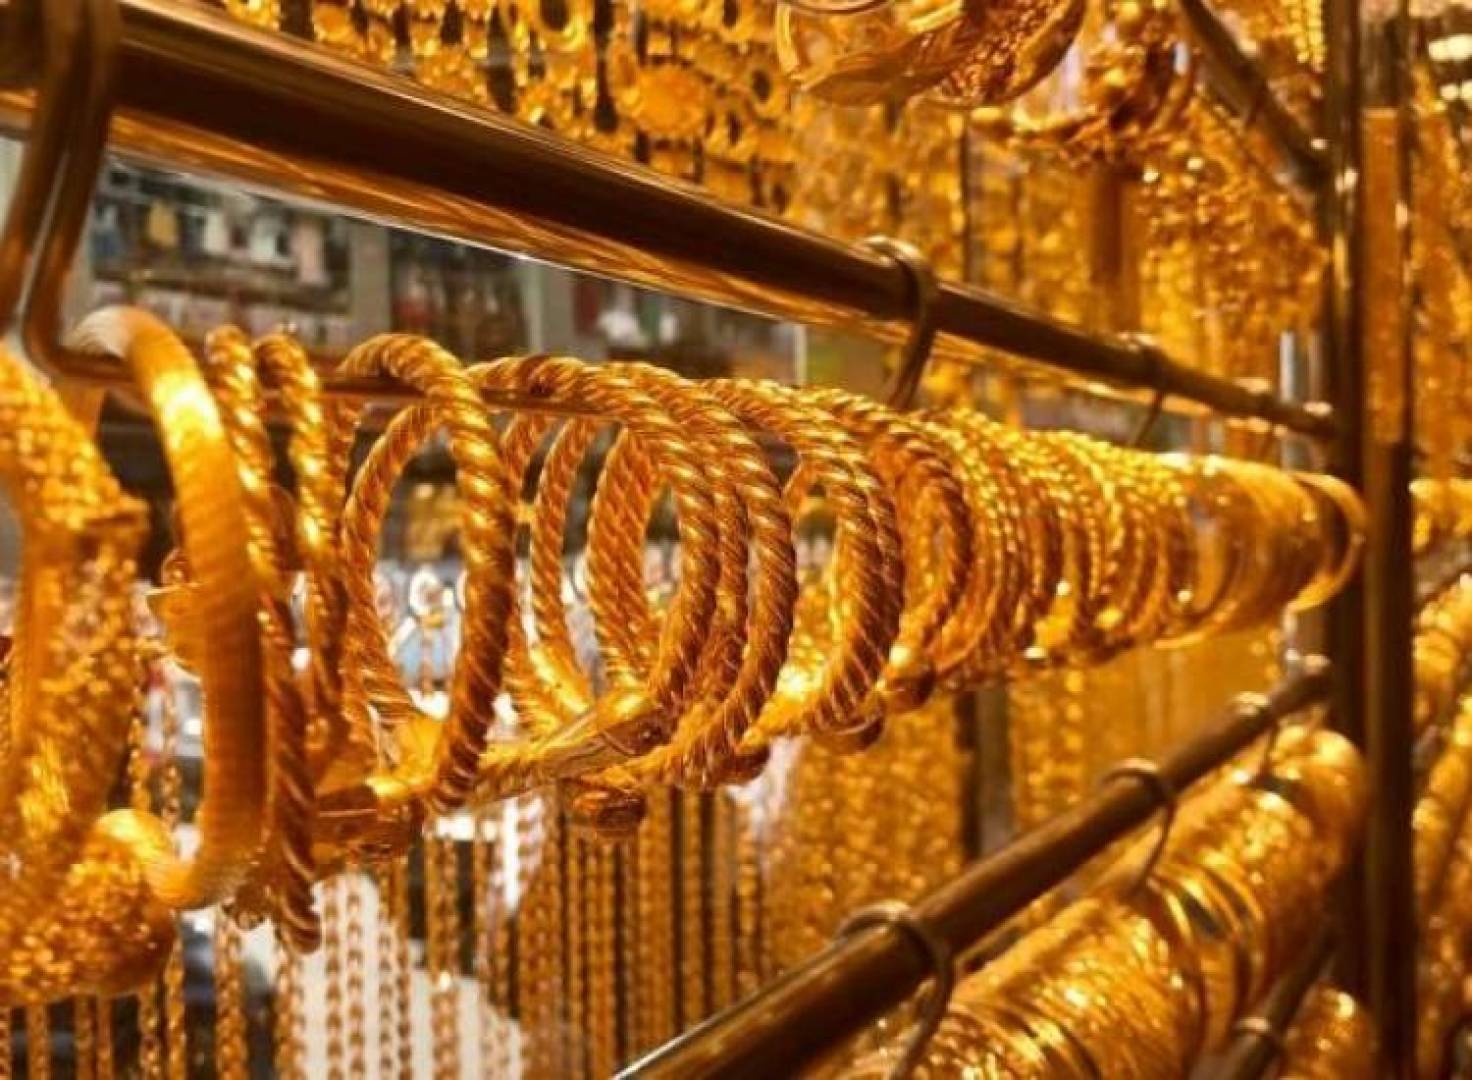 إليكم سعر الذهب في سوريا اليوم الأربعاء 16 9 2020 اسعار الذهب بجميع العيارات بالليرة السورية